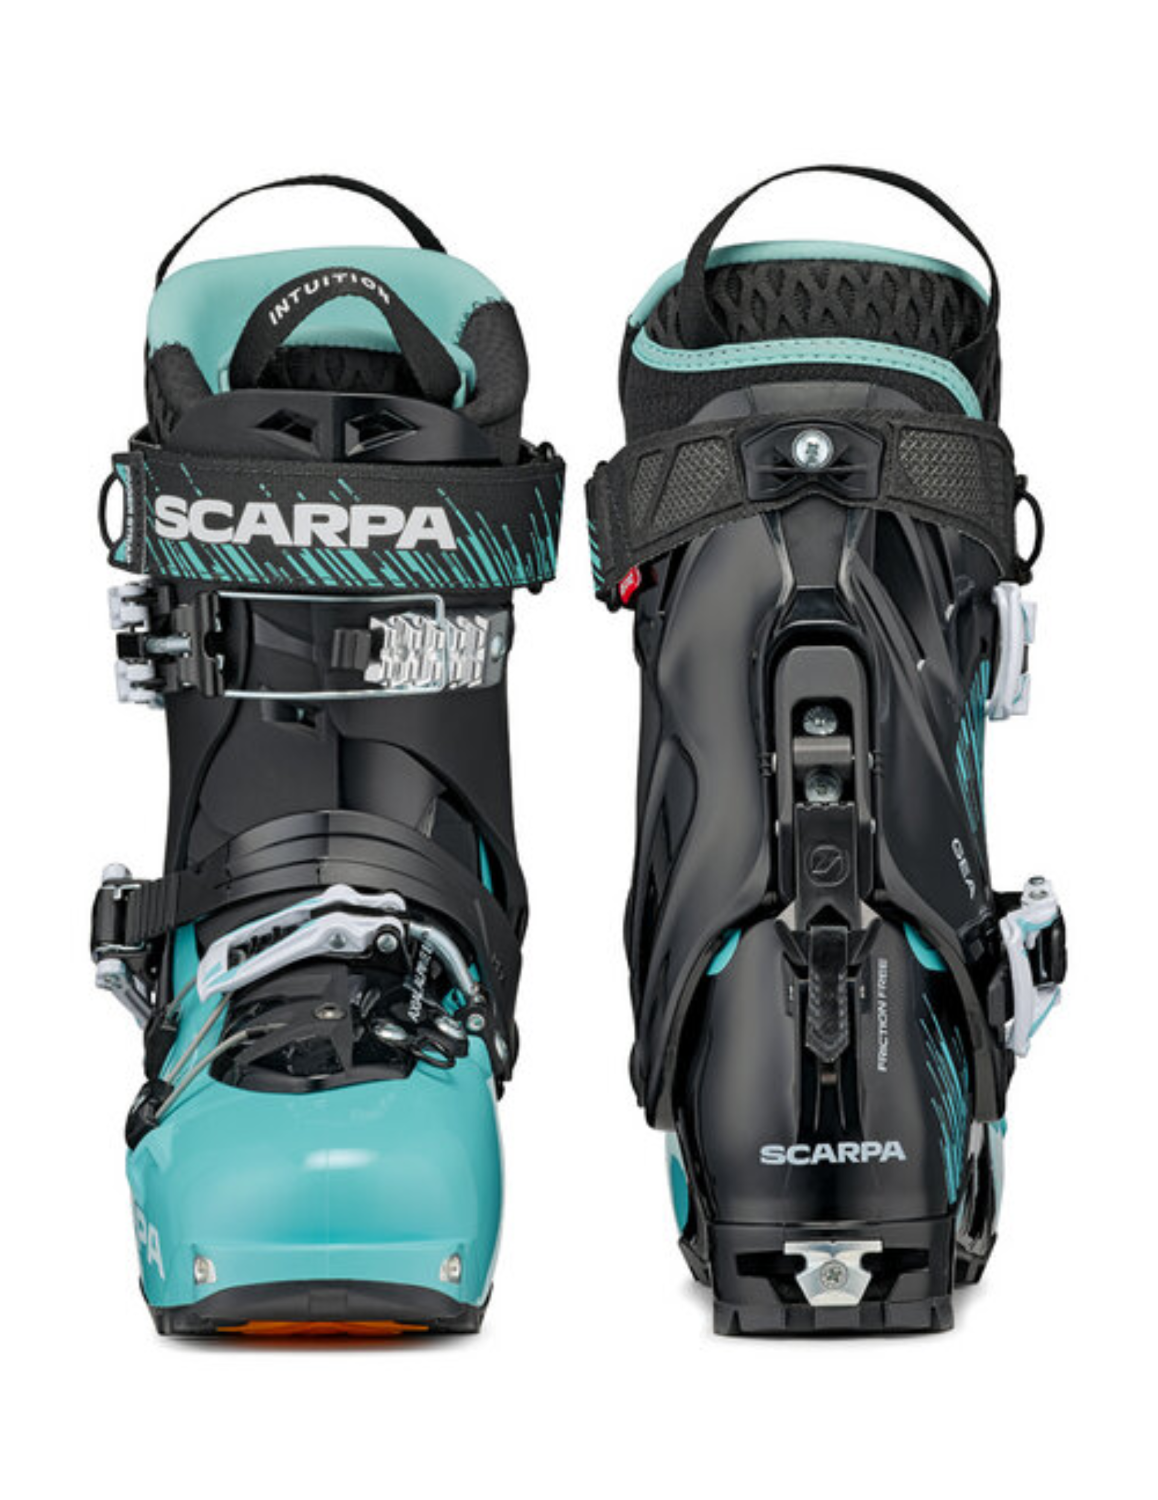 Chaussures de ski de randonnée SCARPA Gea pour femme, boucles de serrage ultra-précises